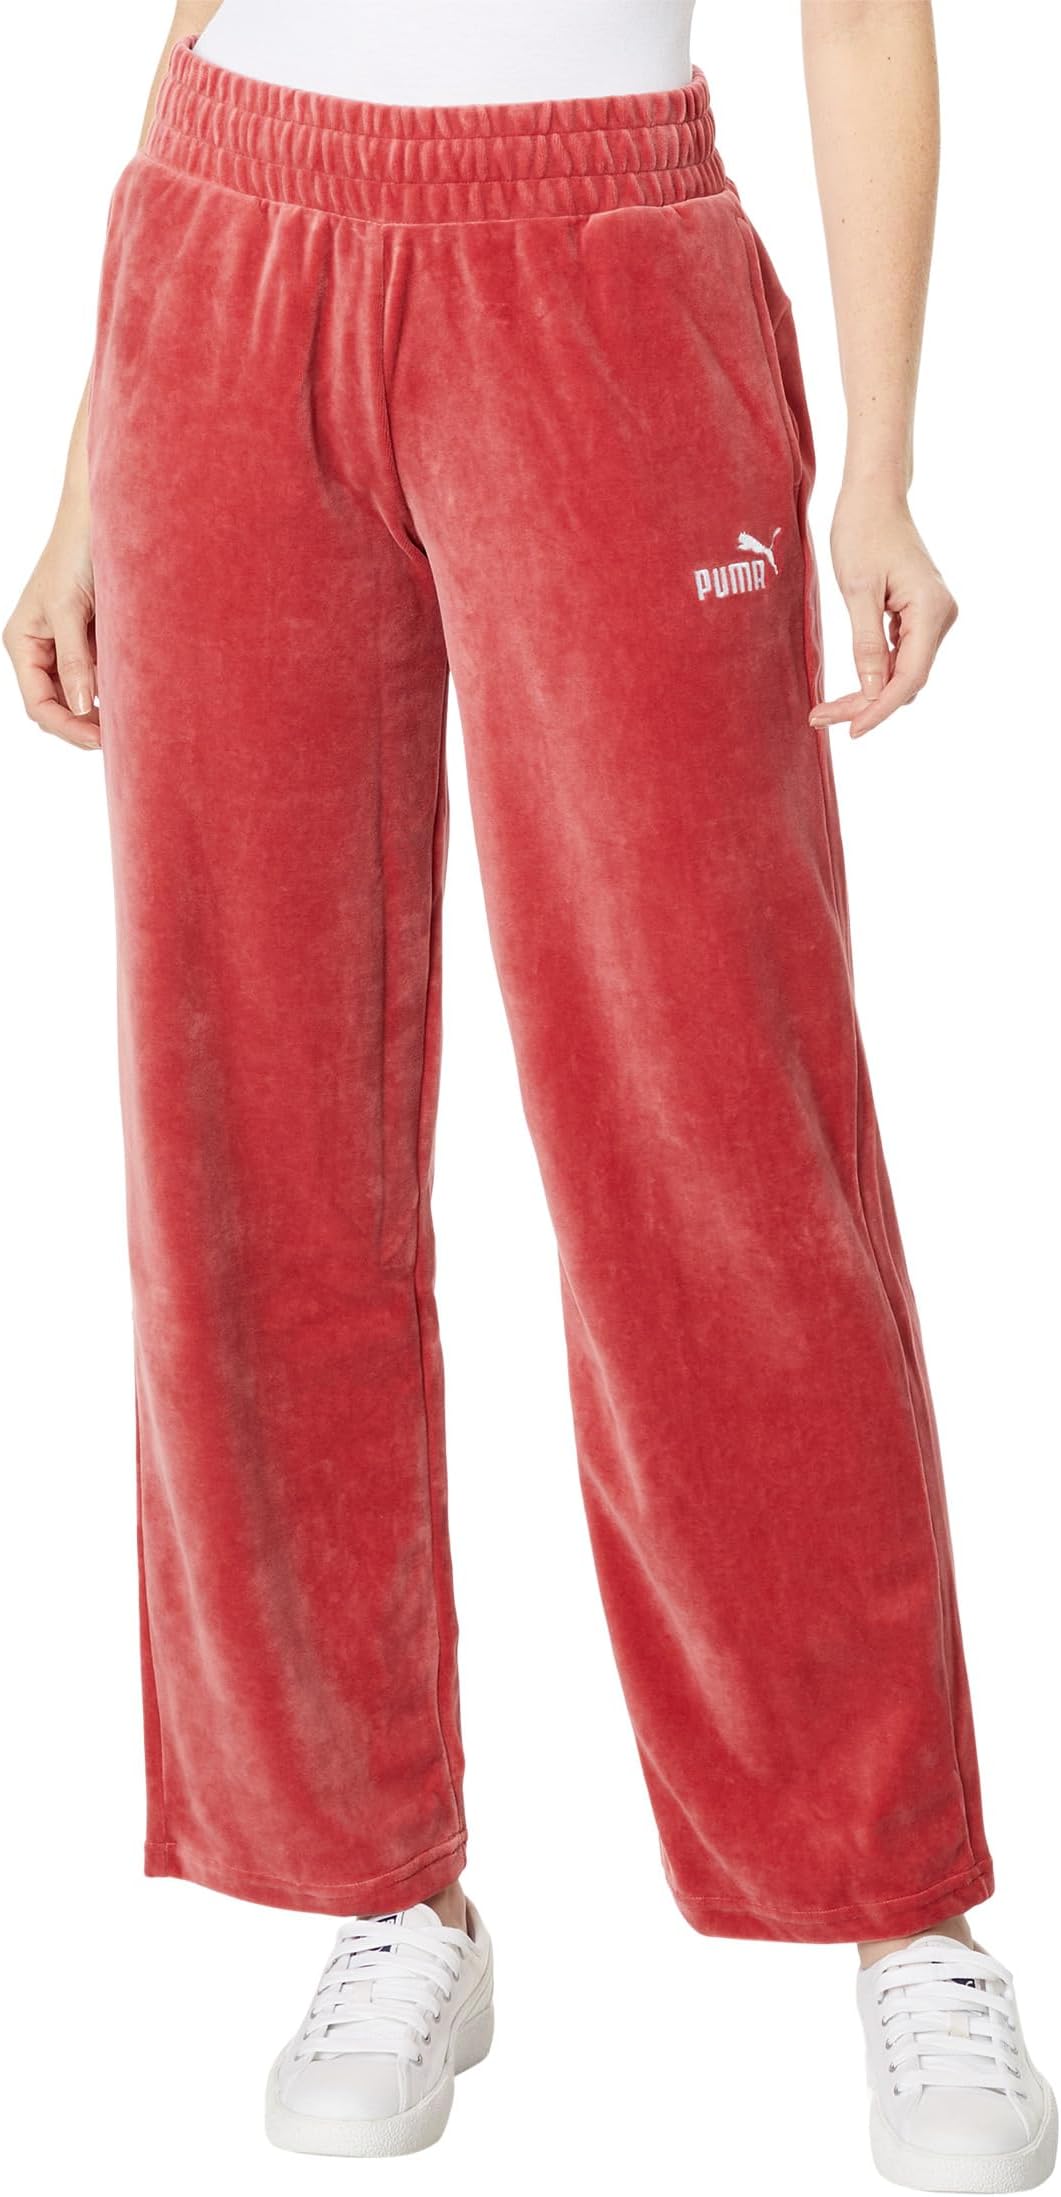 Прямые велюровые брюки Essentials с приподнятым верхом PUMA, цвет Astro Red